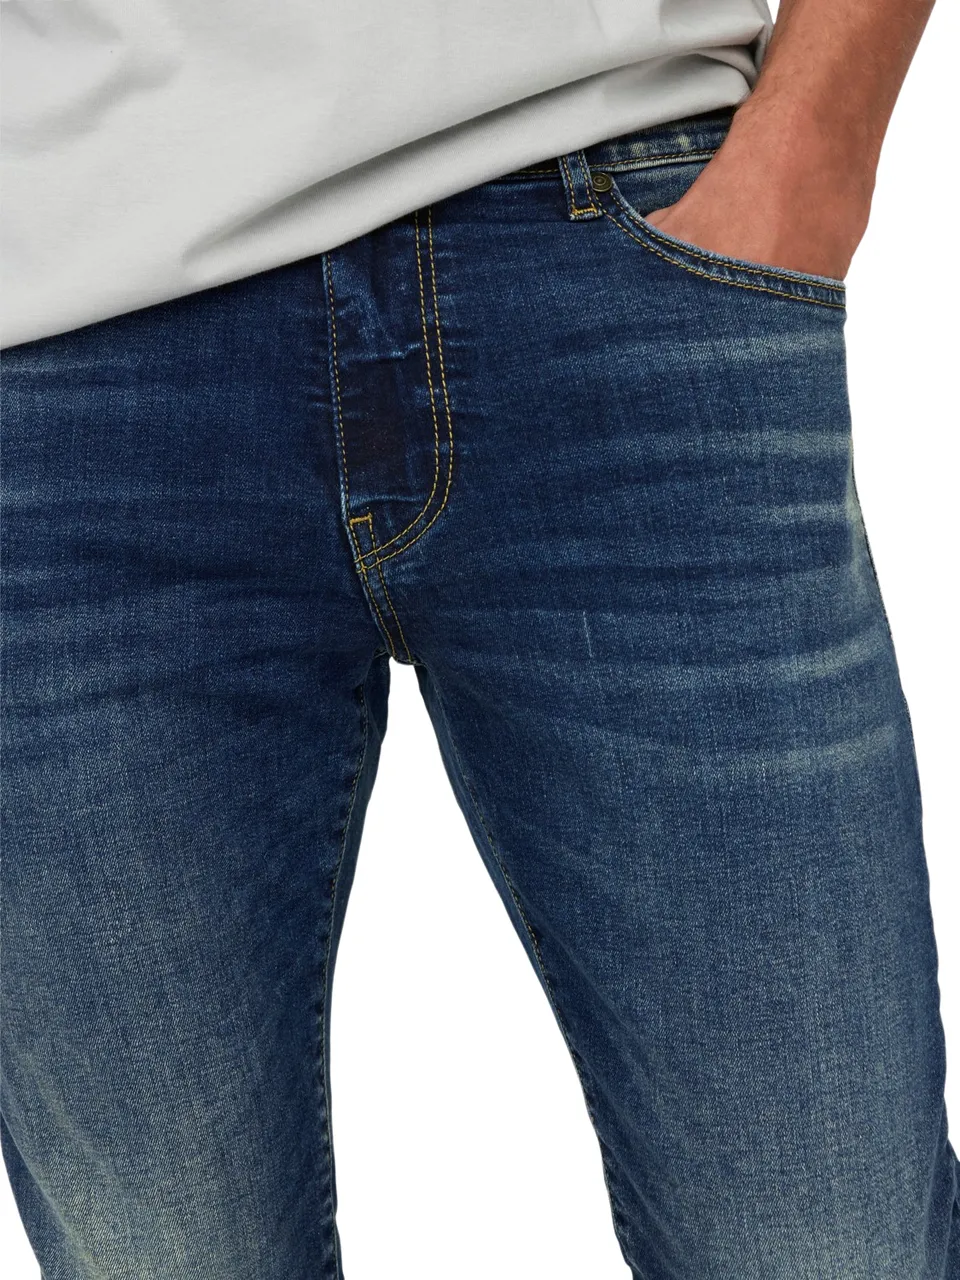 Only & Sons Herren Jeans ONSLOOM SLIM 6920 - Slim Fit - Blau - Medium Blue Denim